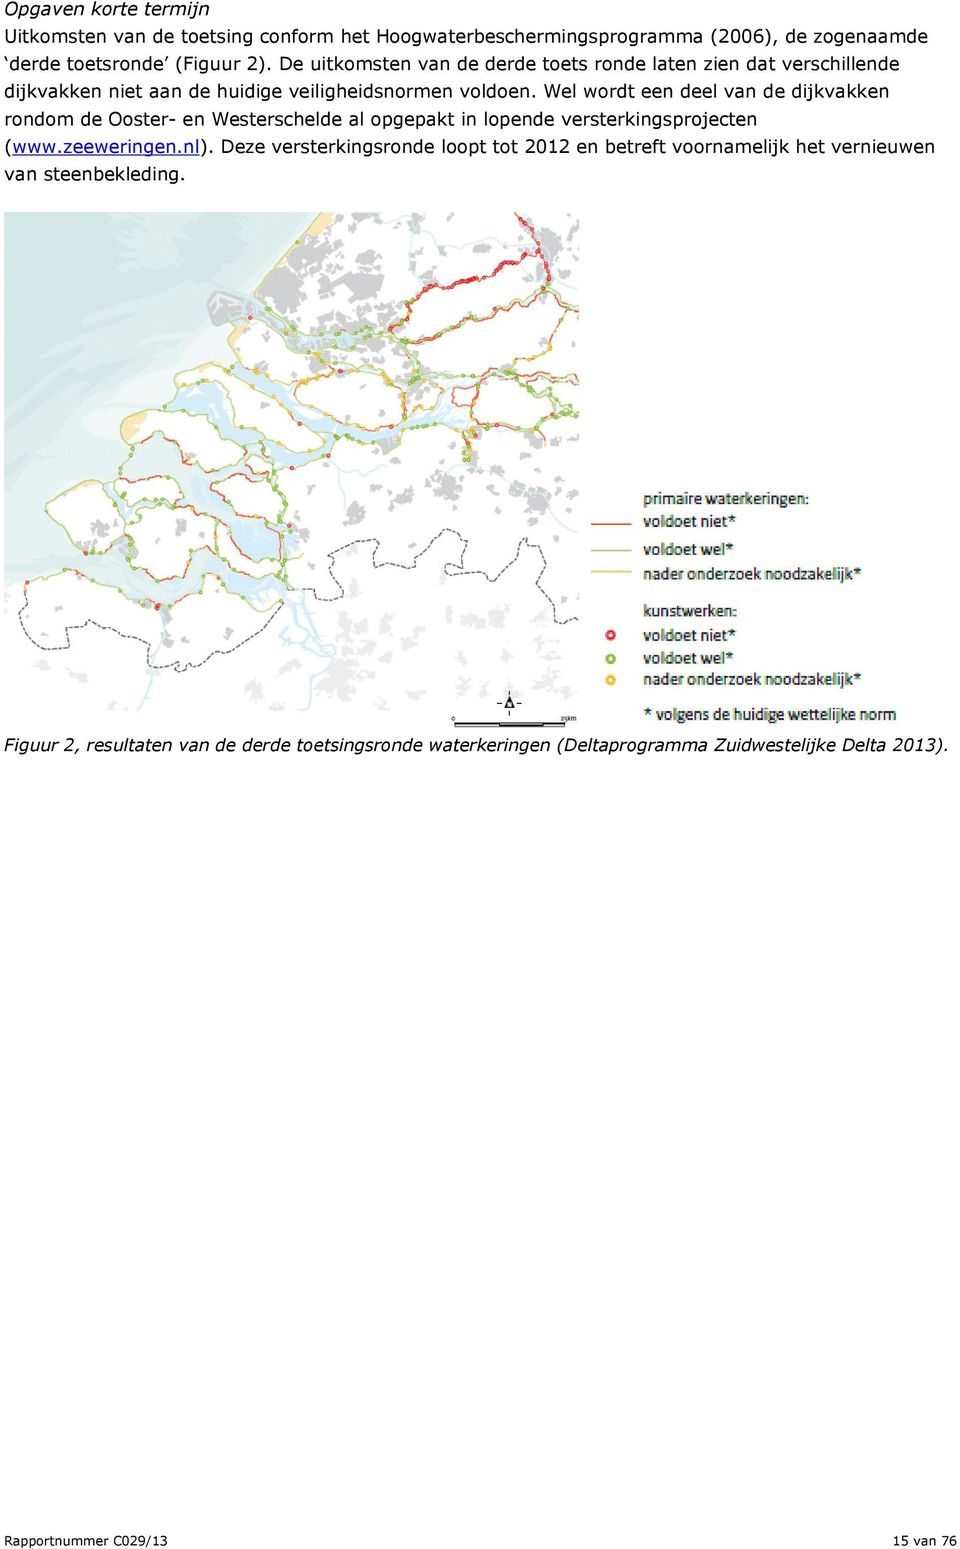 Wel wordt een deel van de dijkvakken rondom de Ooster- en Westerschelde al opgepakt in lopende versterkingsprojecten (www.zeeweringen.nl).